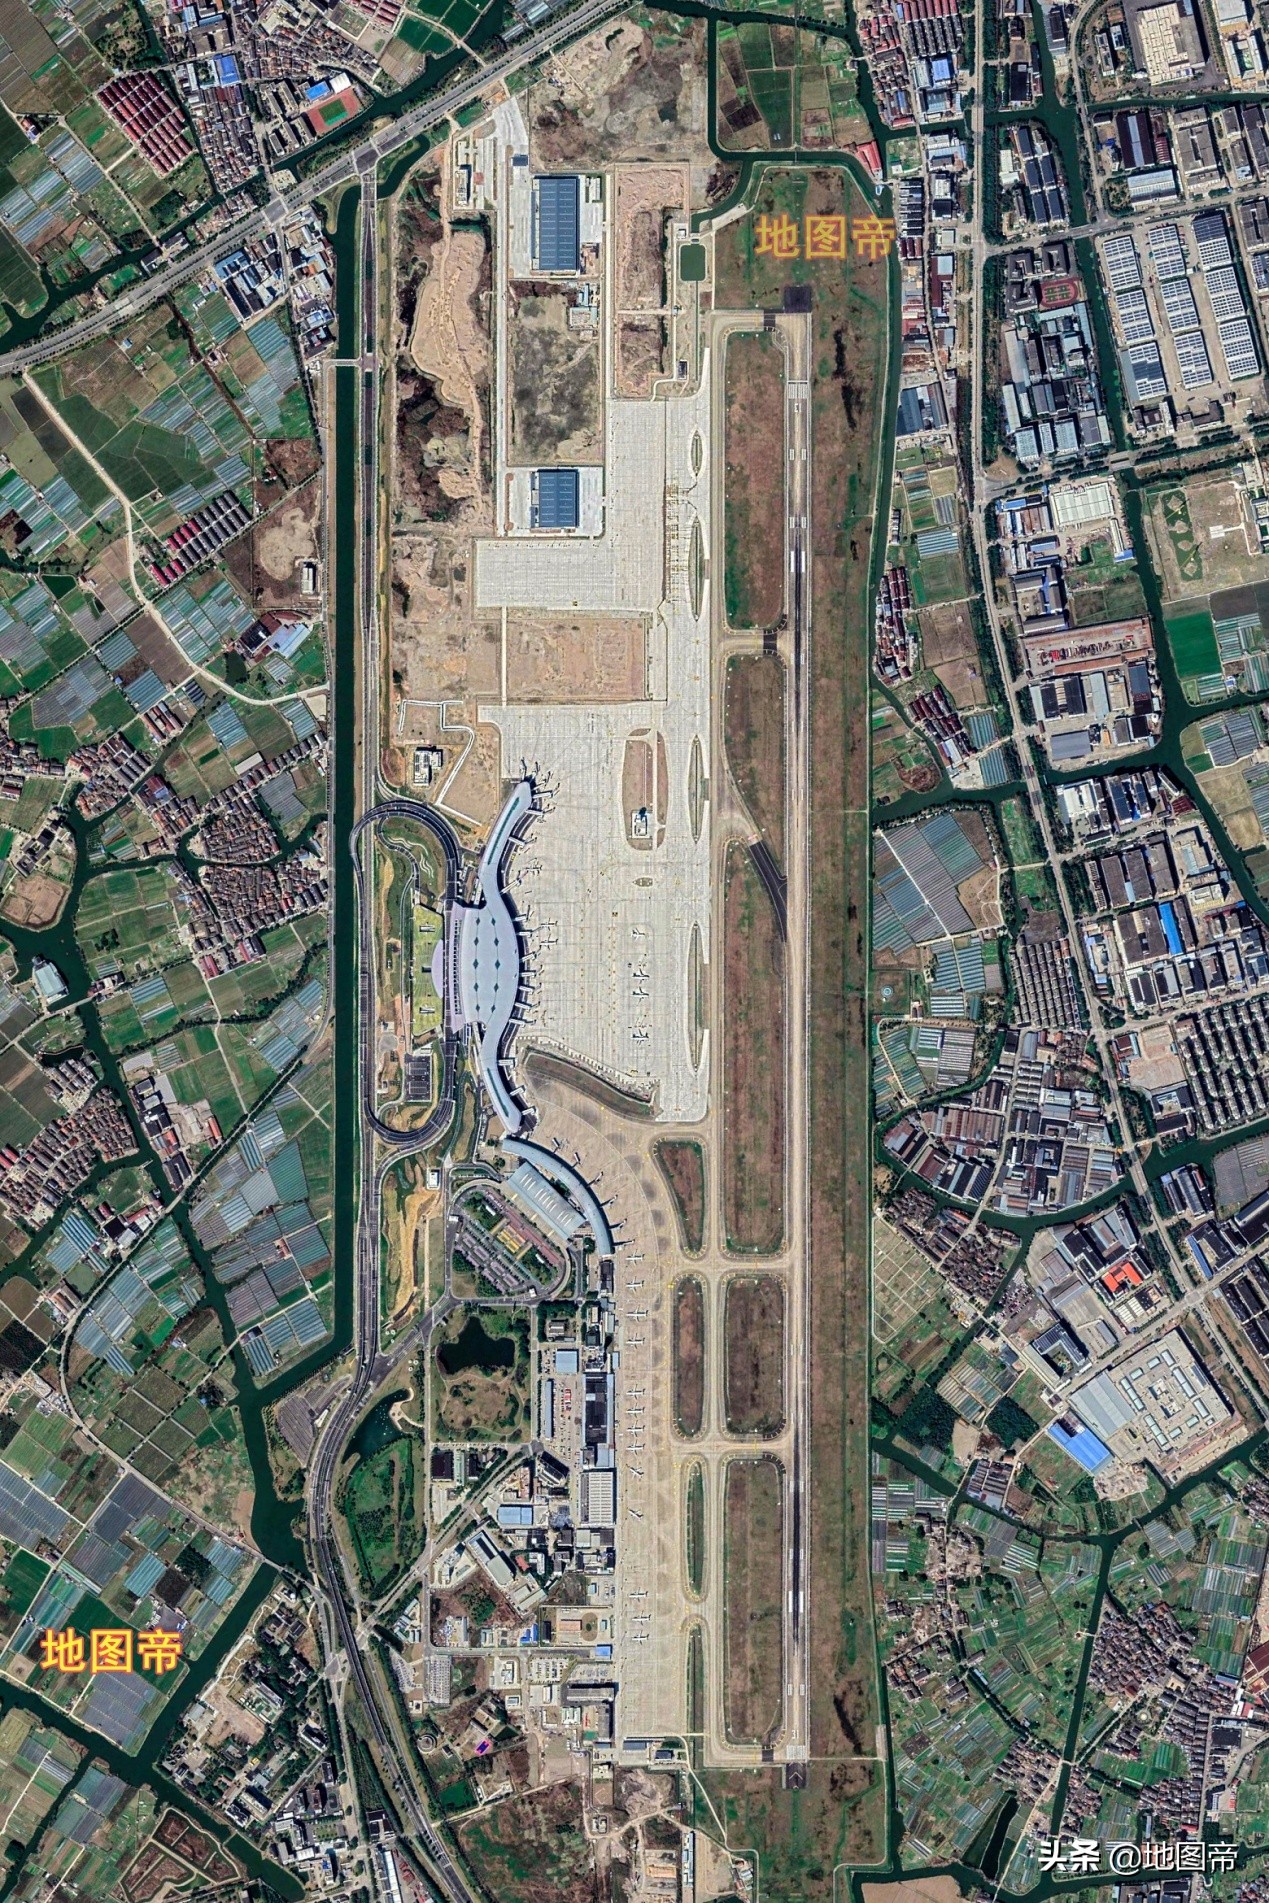 宁波栎社国际机场三期扩建工程正式投入运营 – 宁波市建设集团股份有限公司